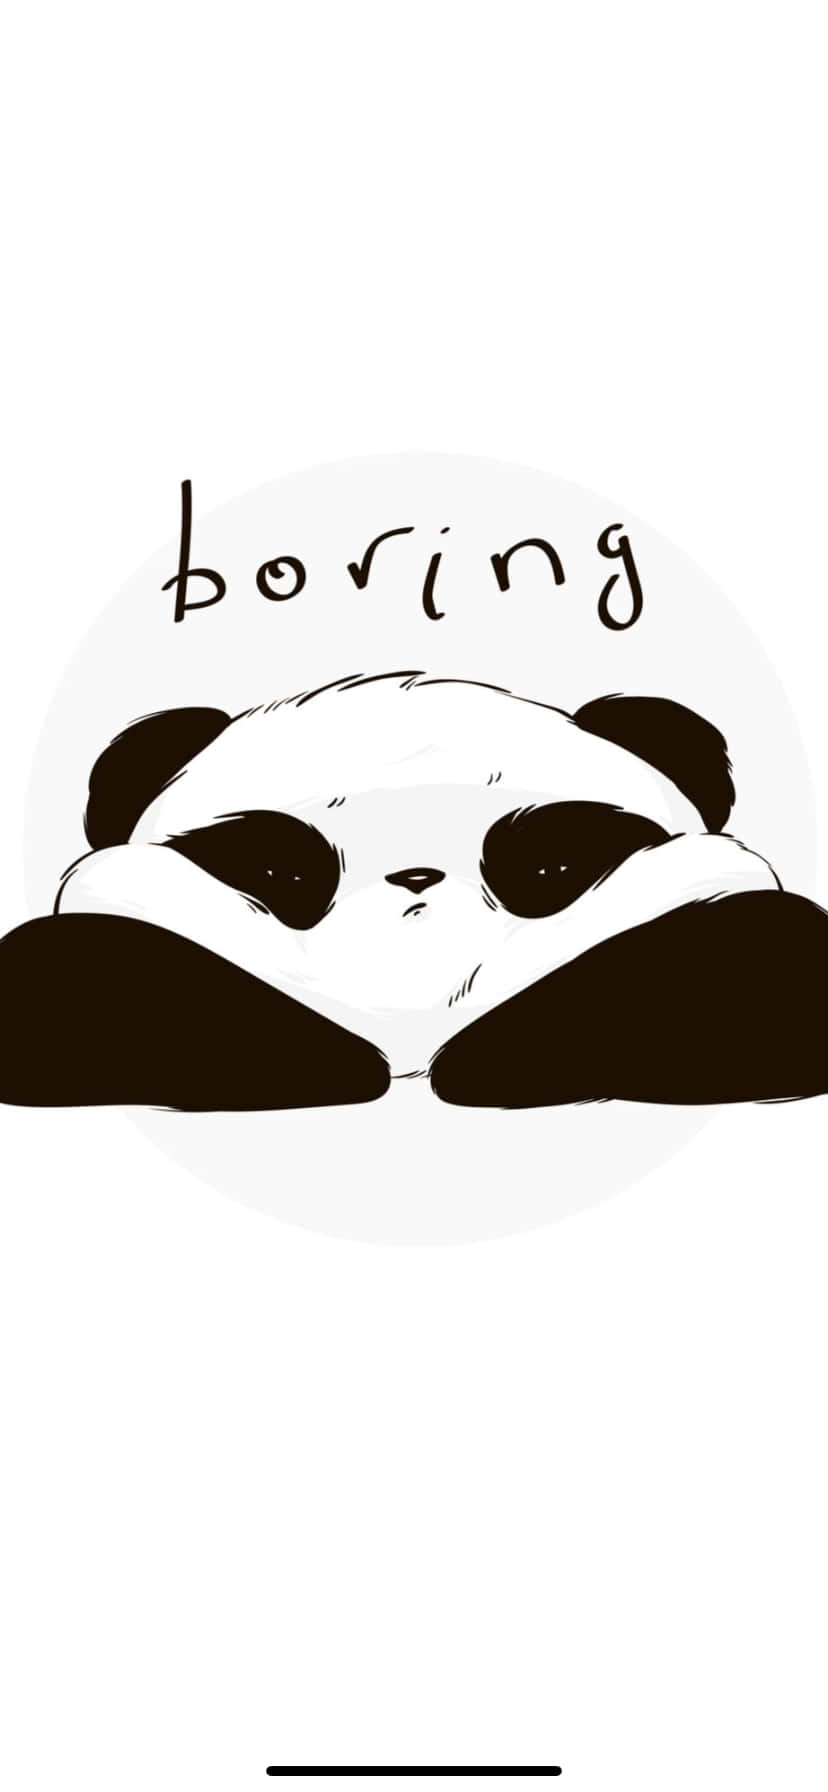 En pandabjørn med ordene kedelig på det. Wallpaper